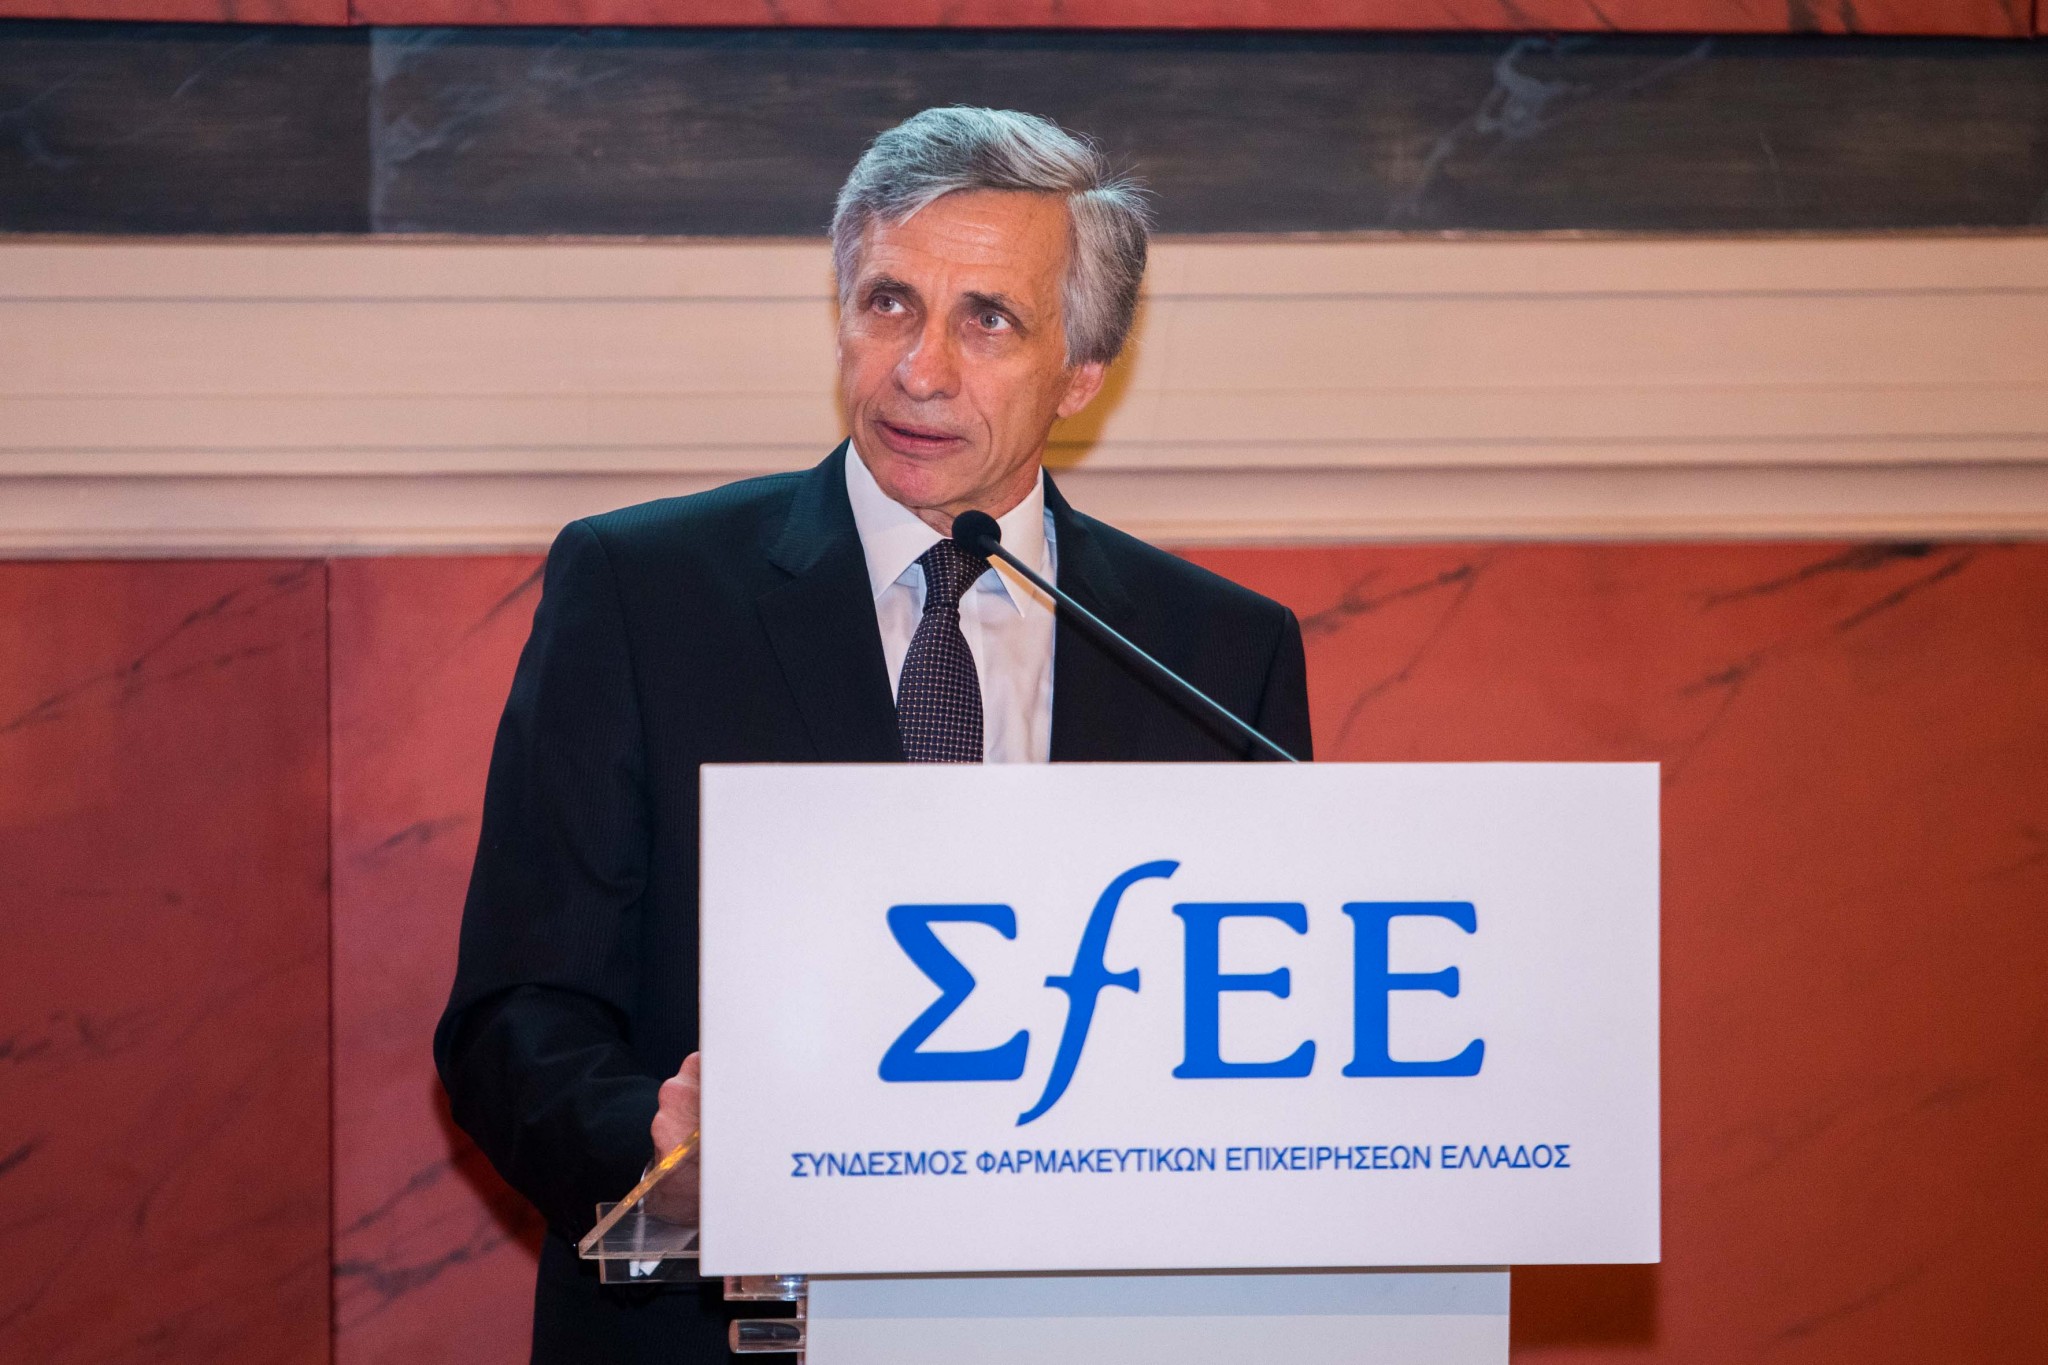 Π. Αποστολίδης- ΗΤΑ : Το νομοσχέδιο χρήζει σημαντικών βελτιώσεων